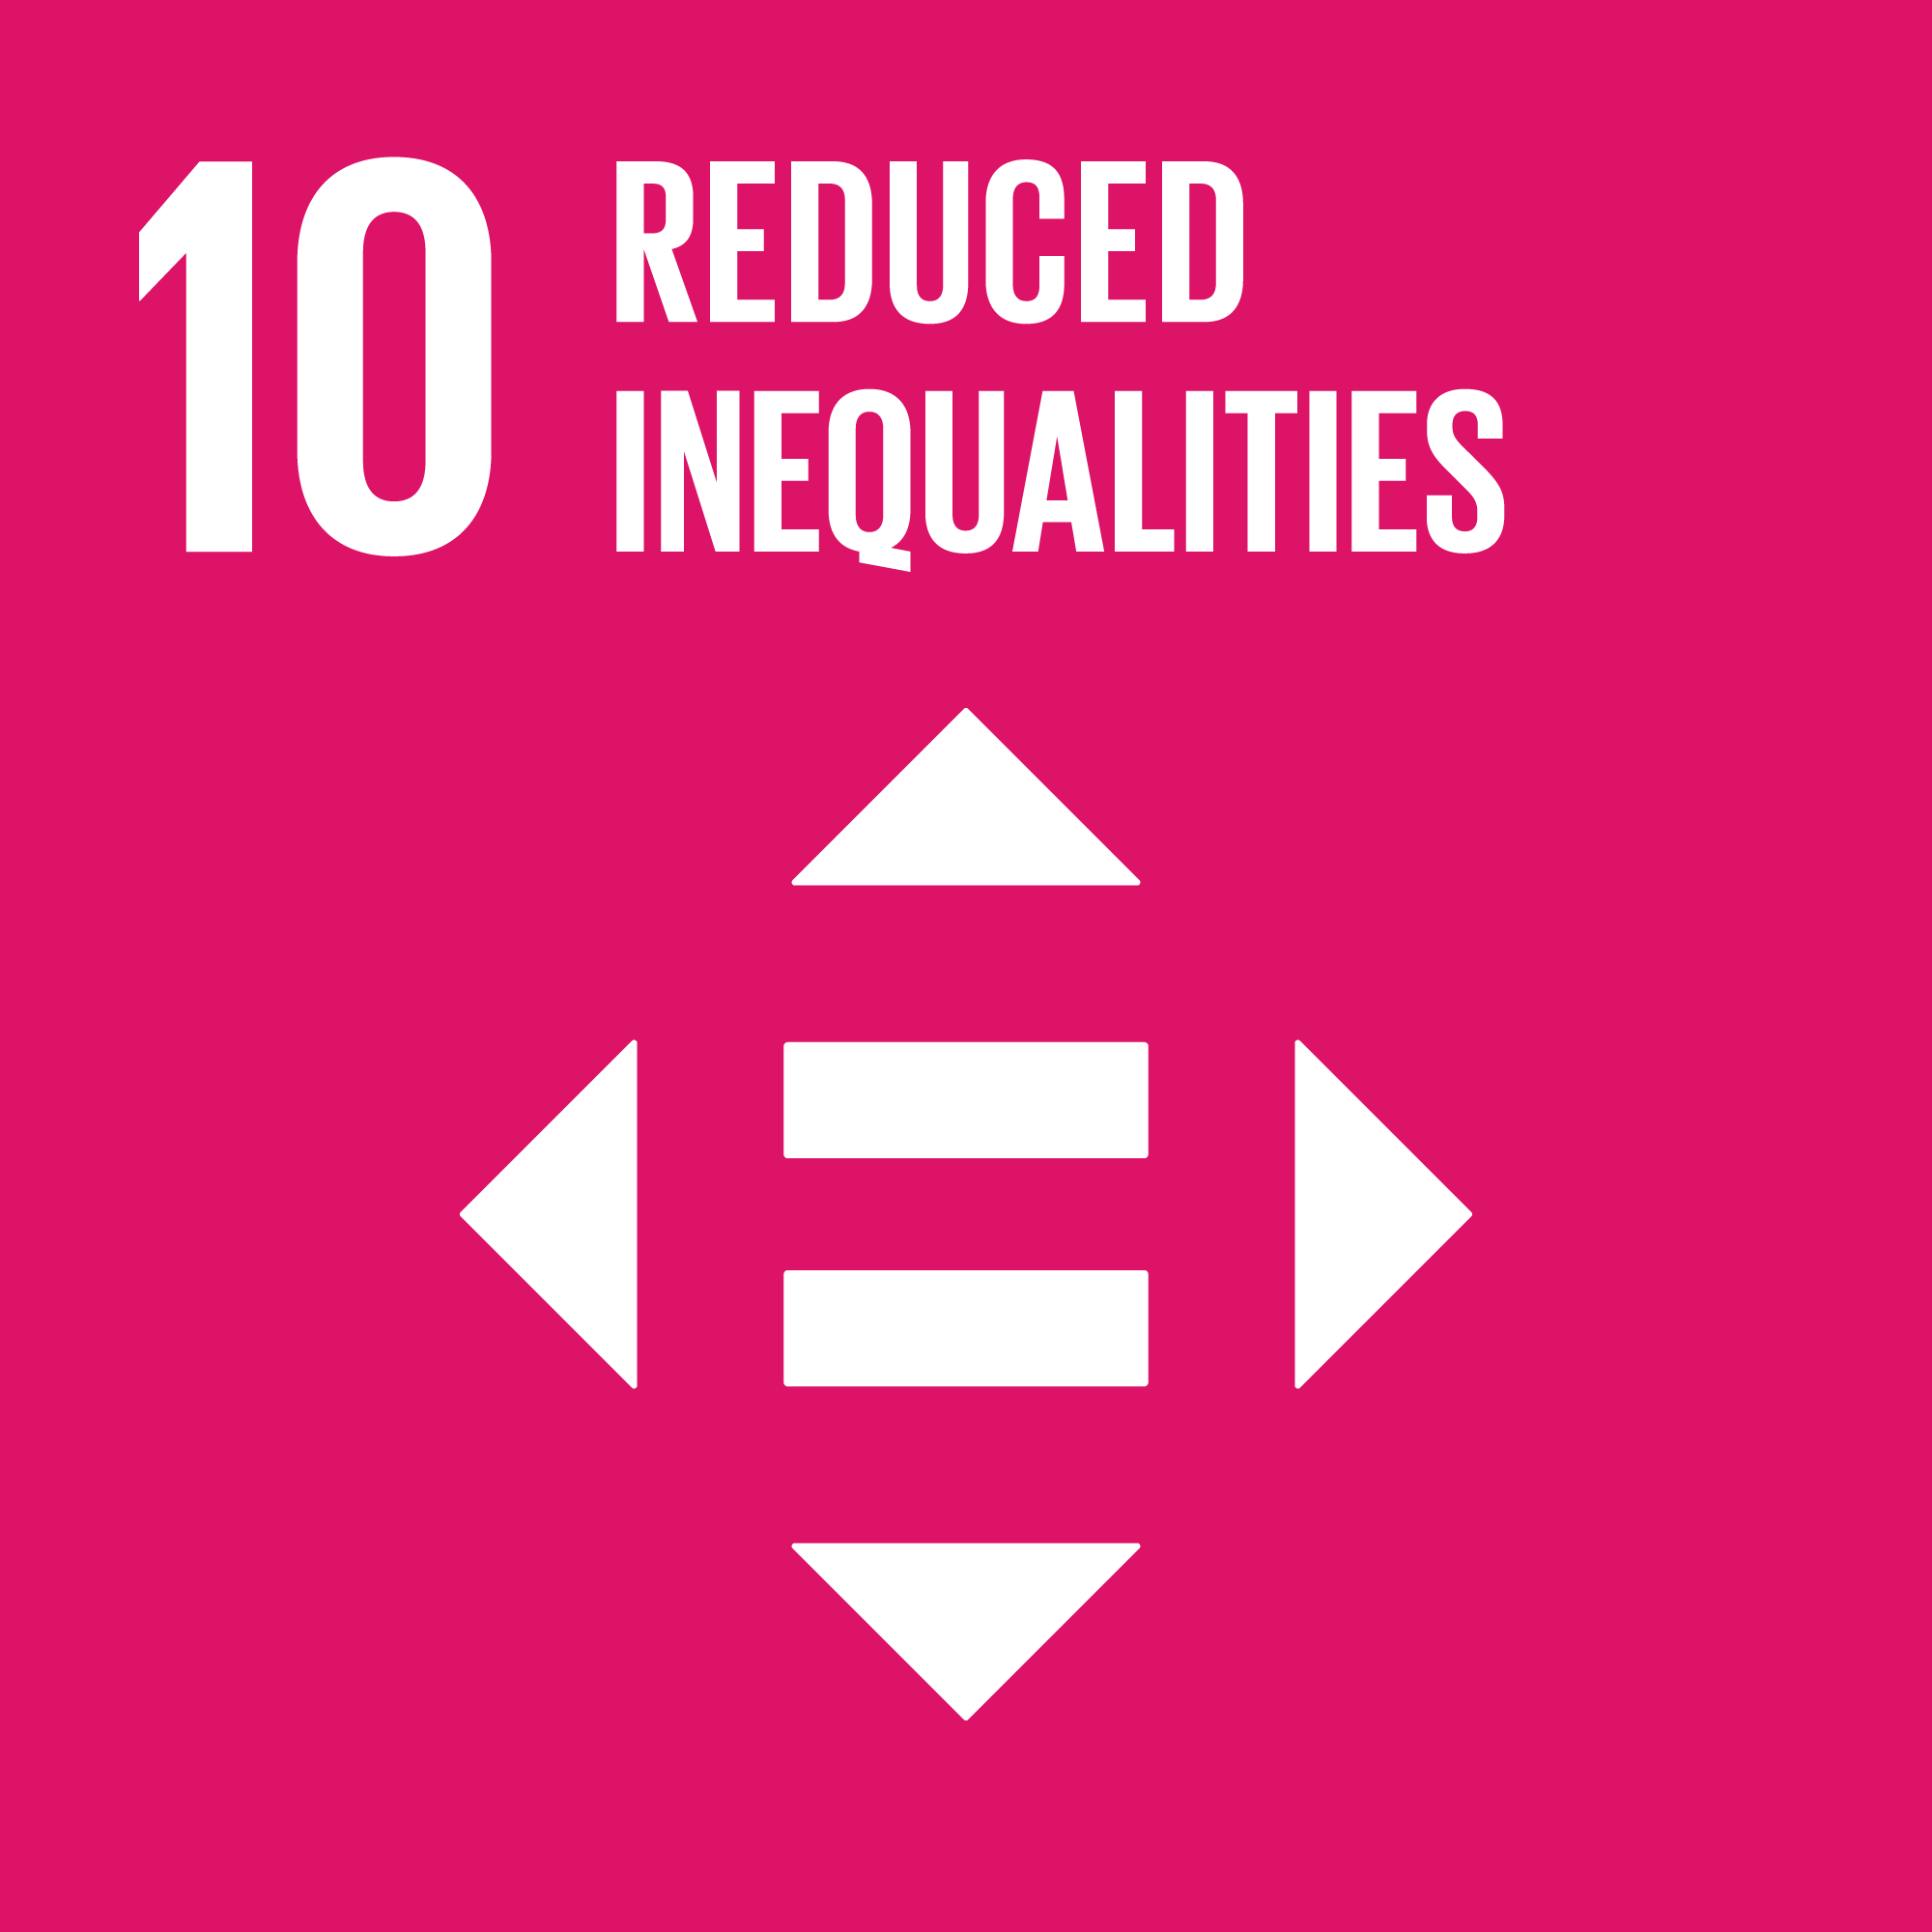 # 10 Disuguaglianze ridotte